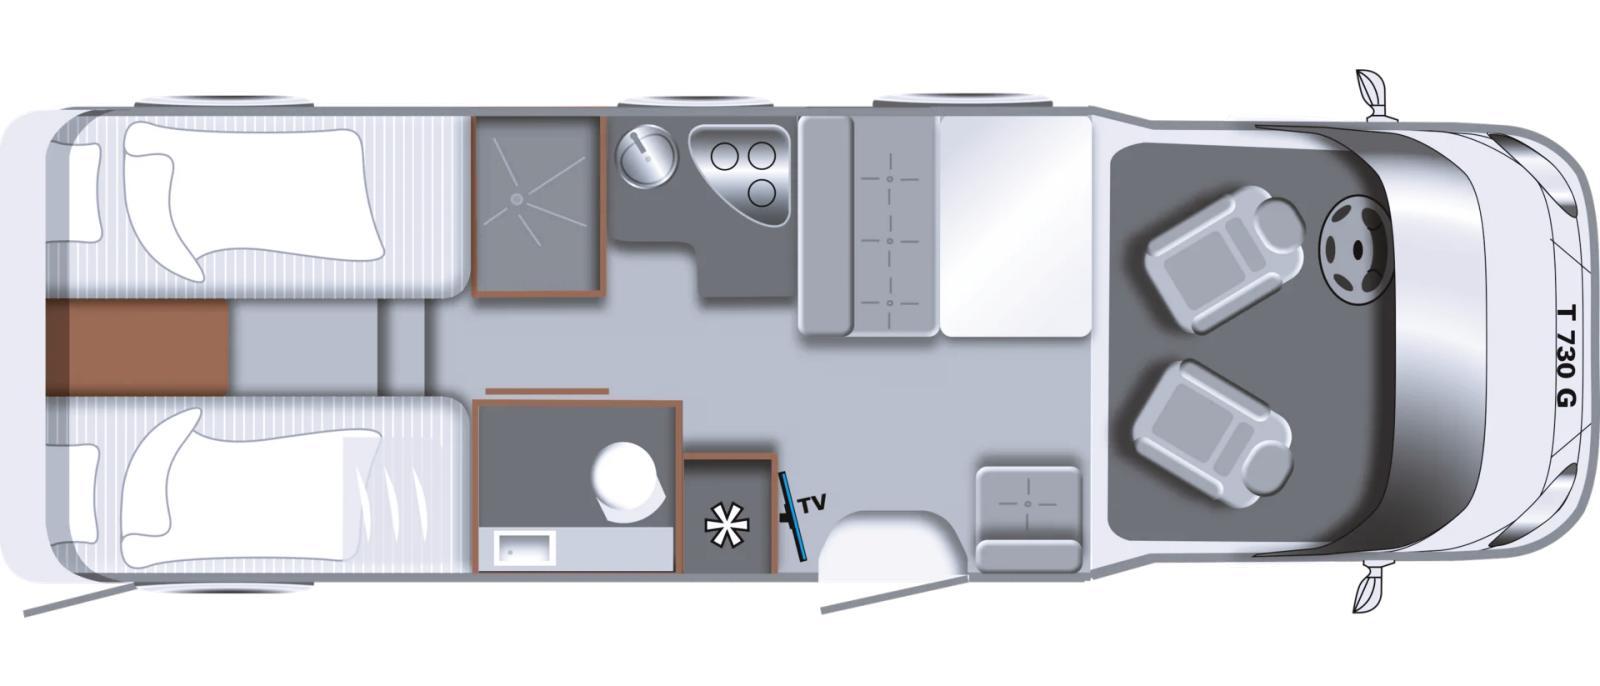 LMC Tourer Lift 730 G : un profilé accessible, moderne et léger | Campingcarlesite